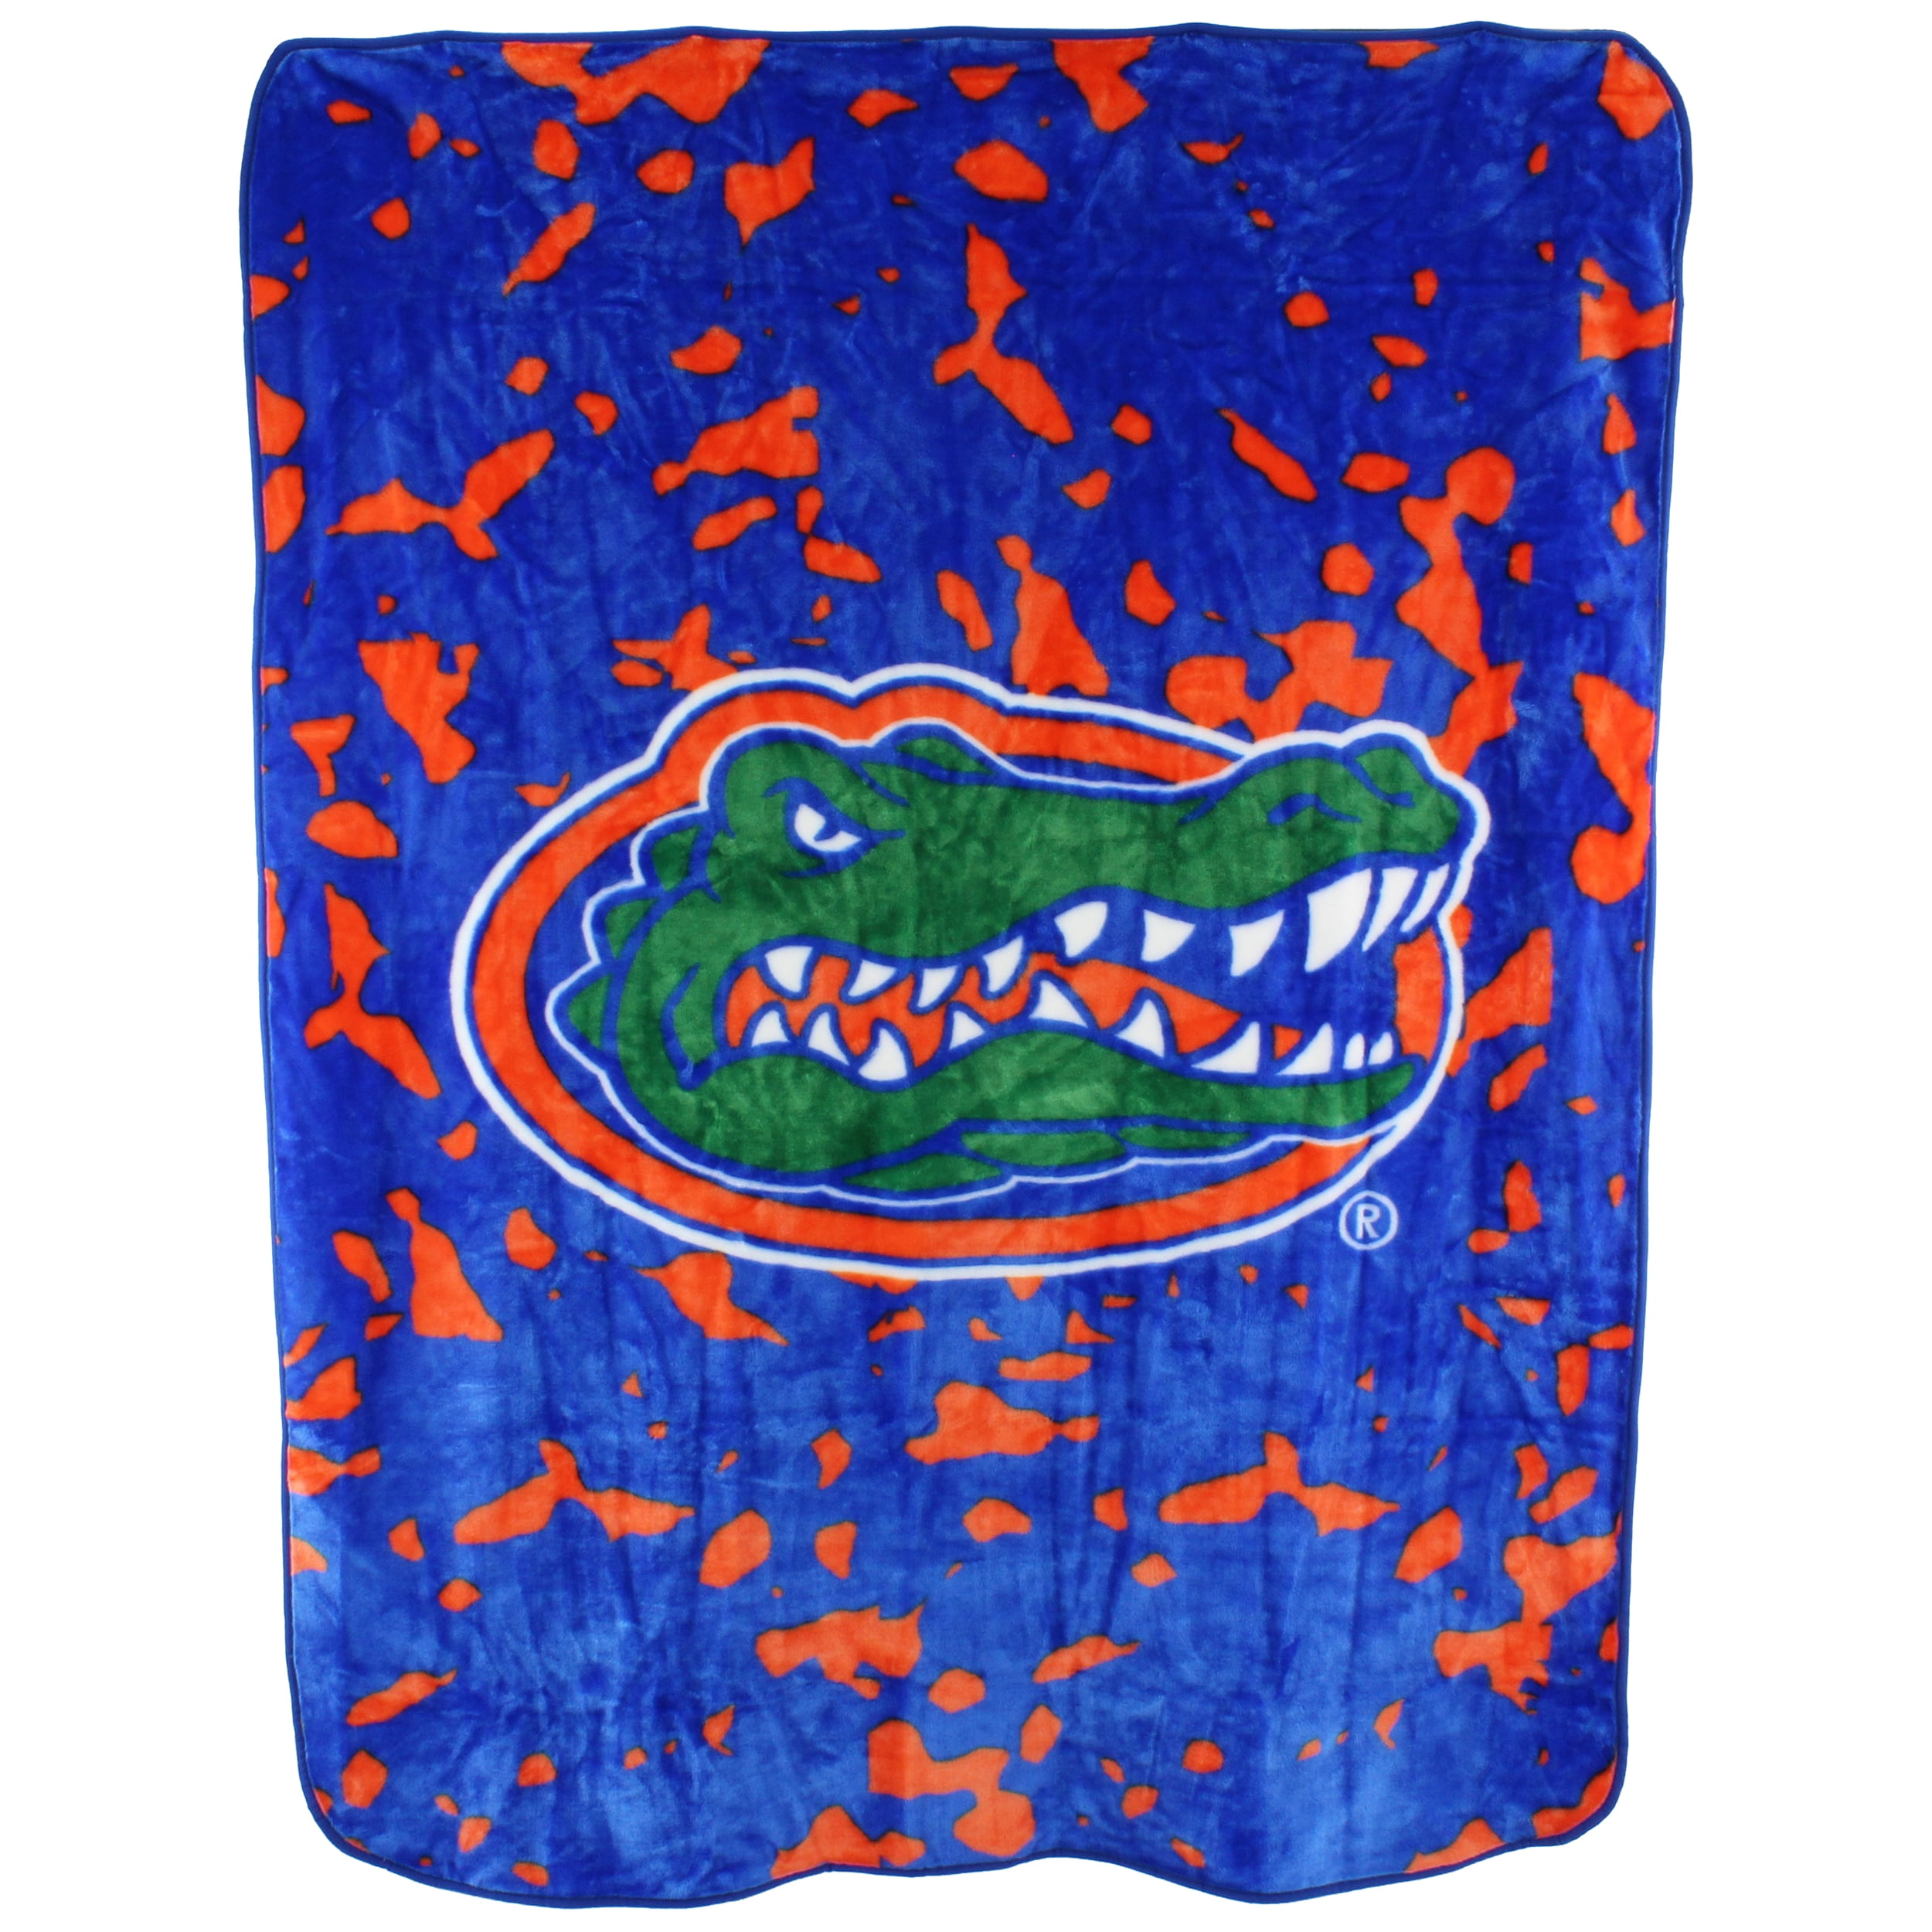 College Covers Florida Gators Huge Raschel Throw Blanket, Bedspread, 86